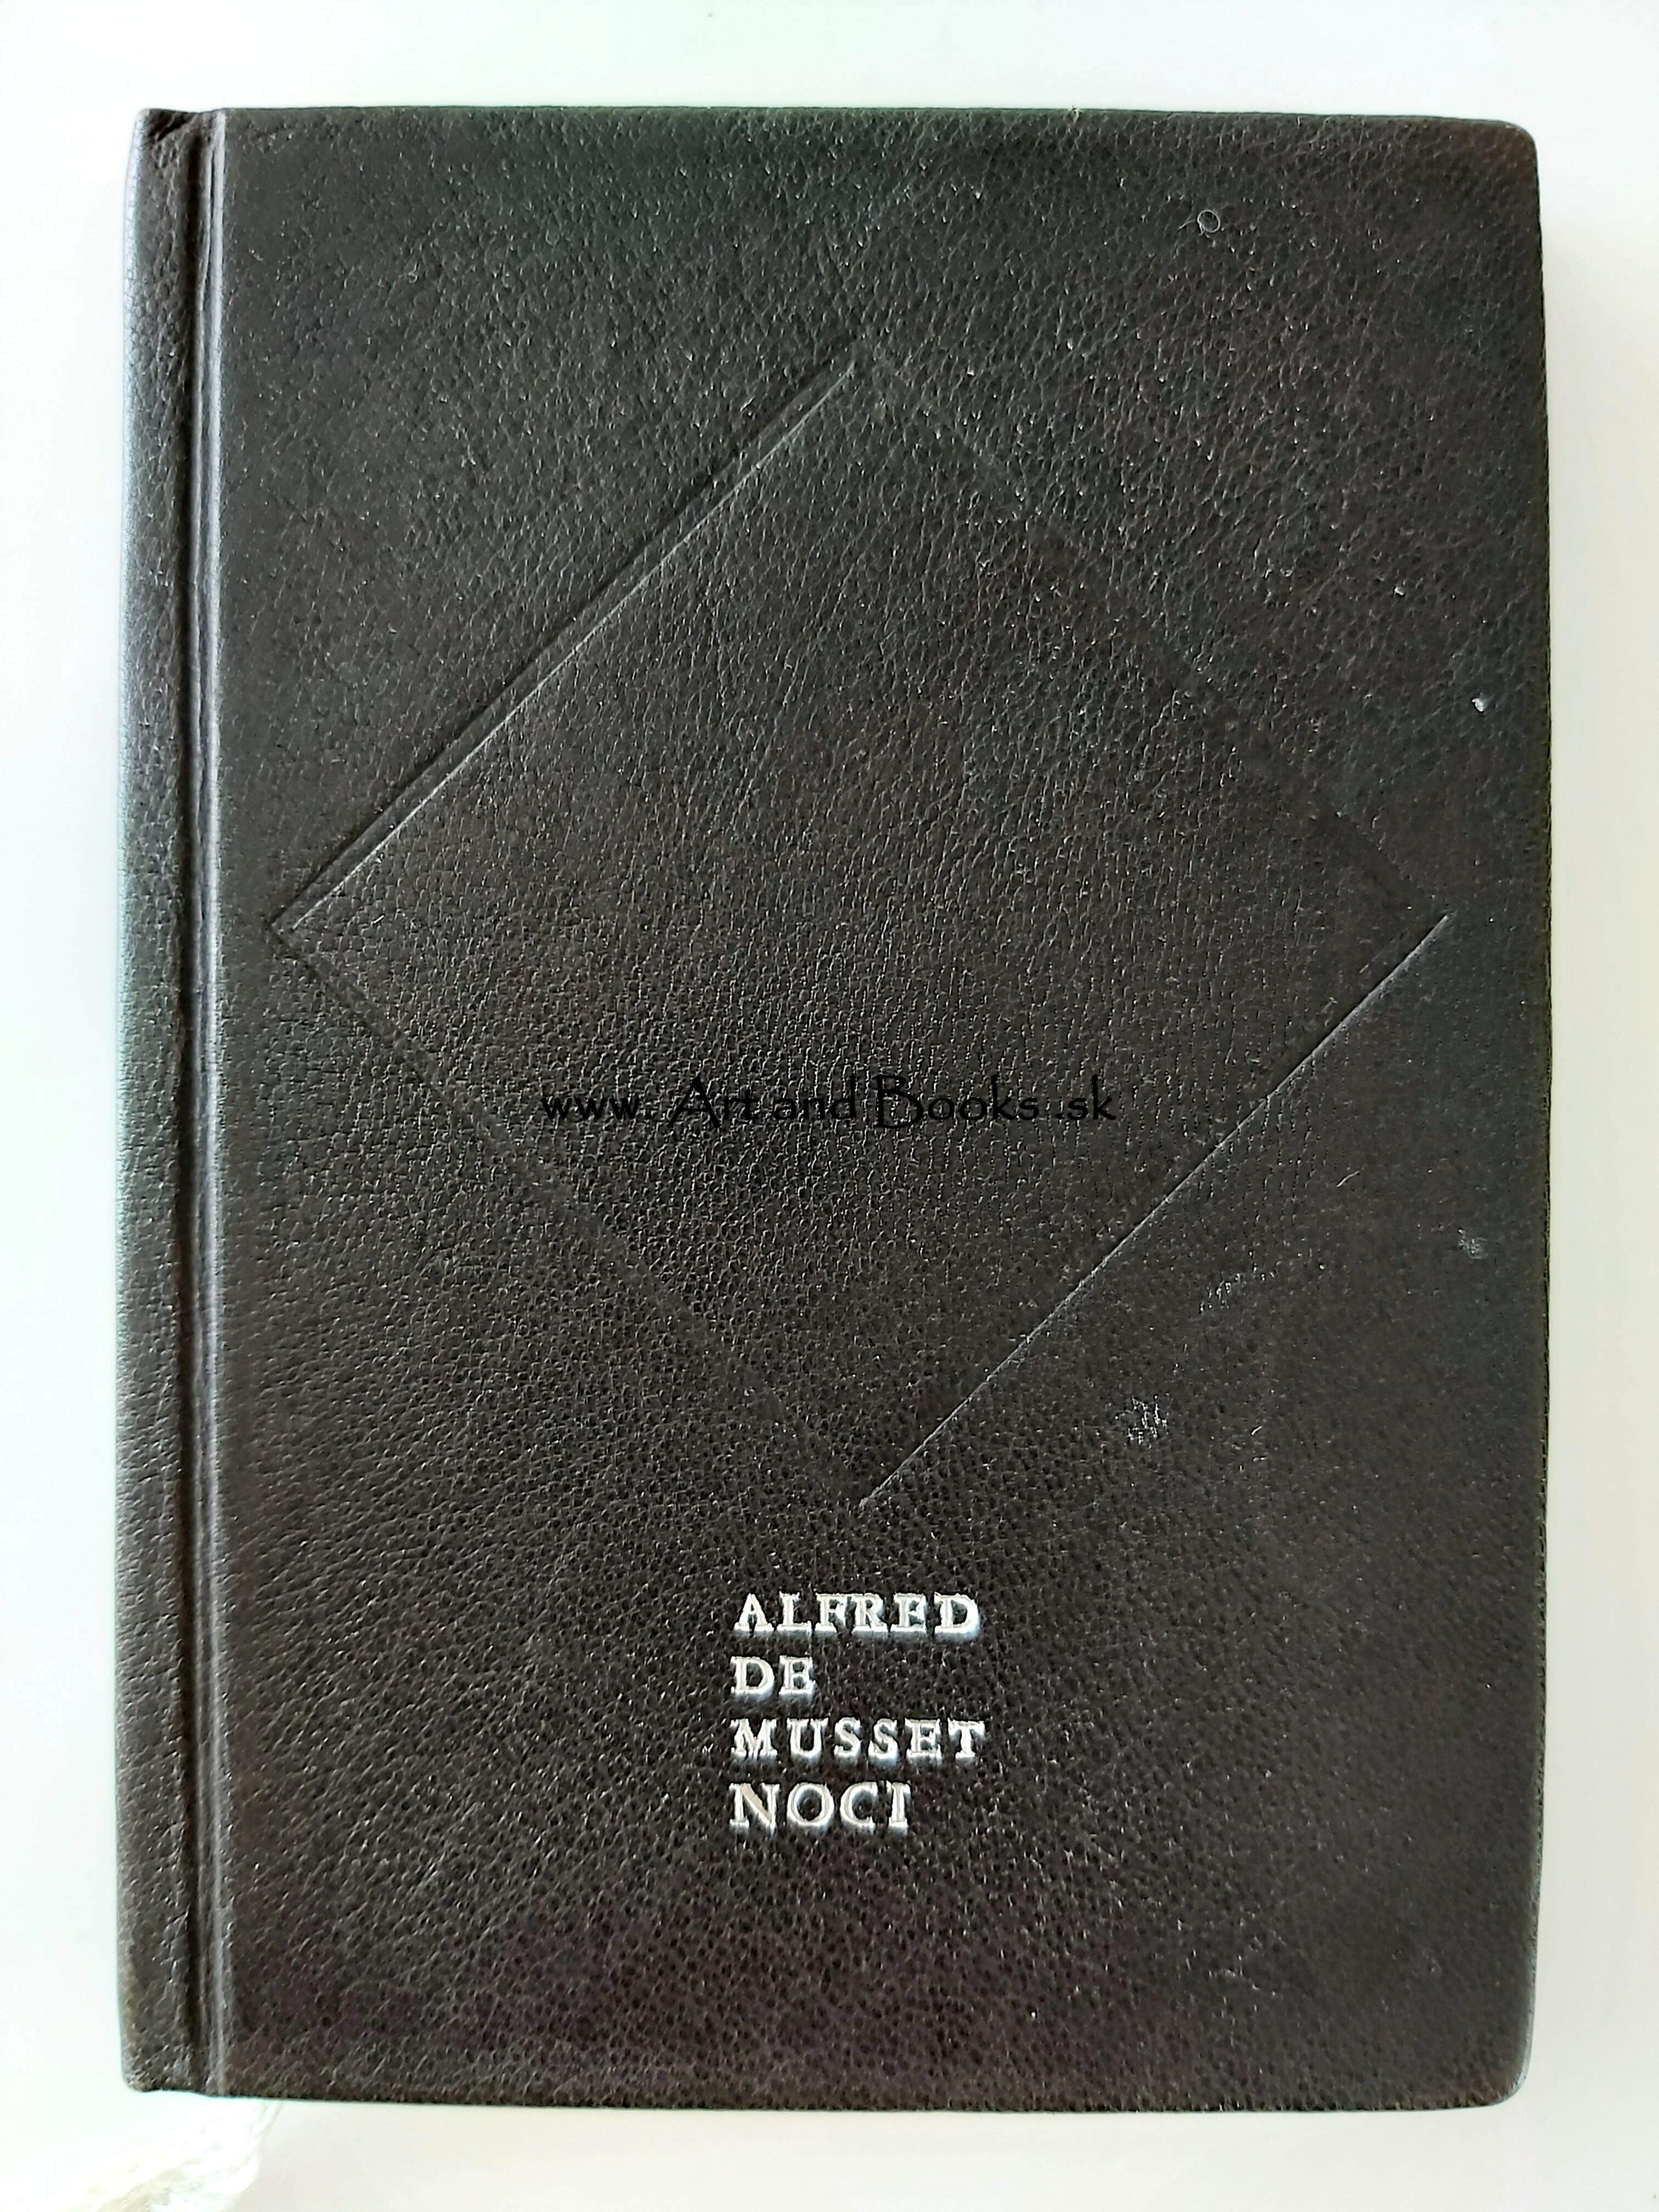 Alfred De Musset - NOCI (1976) (sold/predané) ● 133926